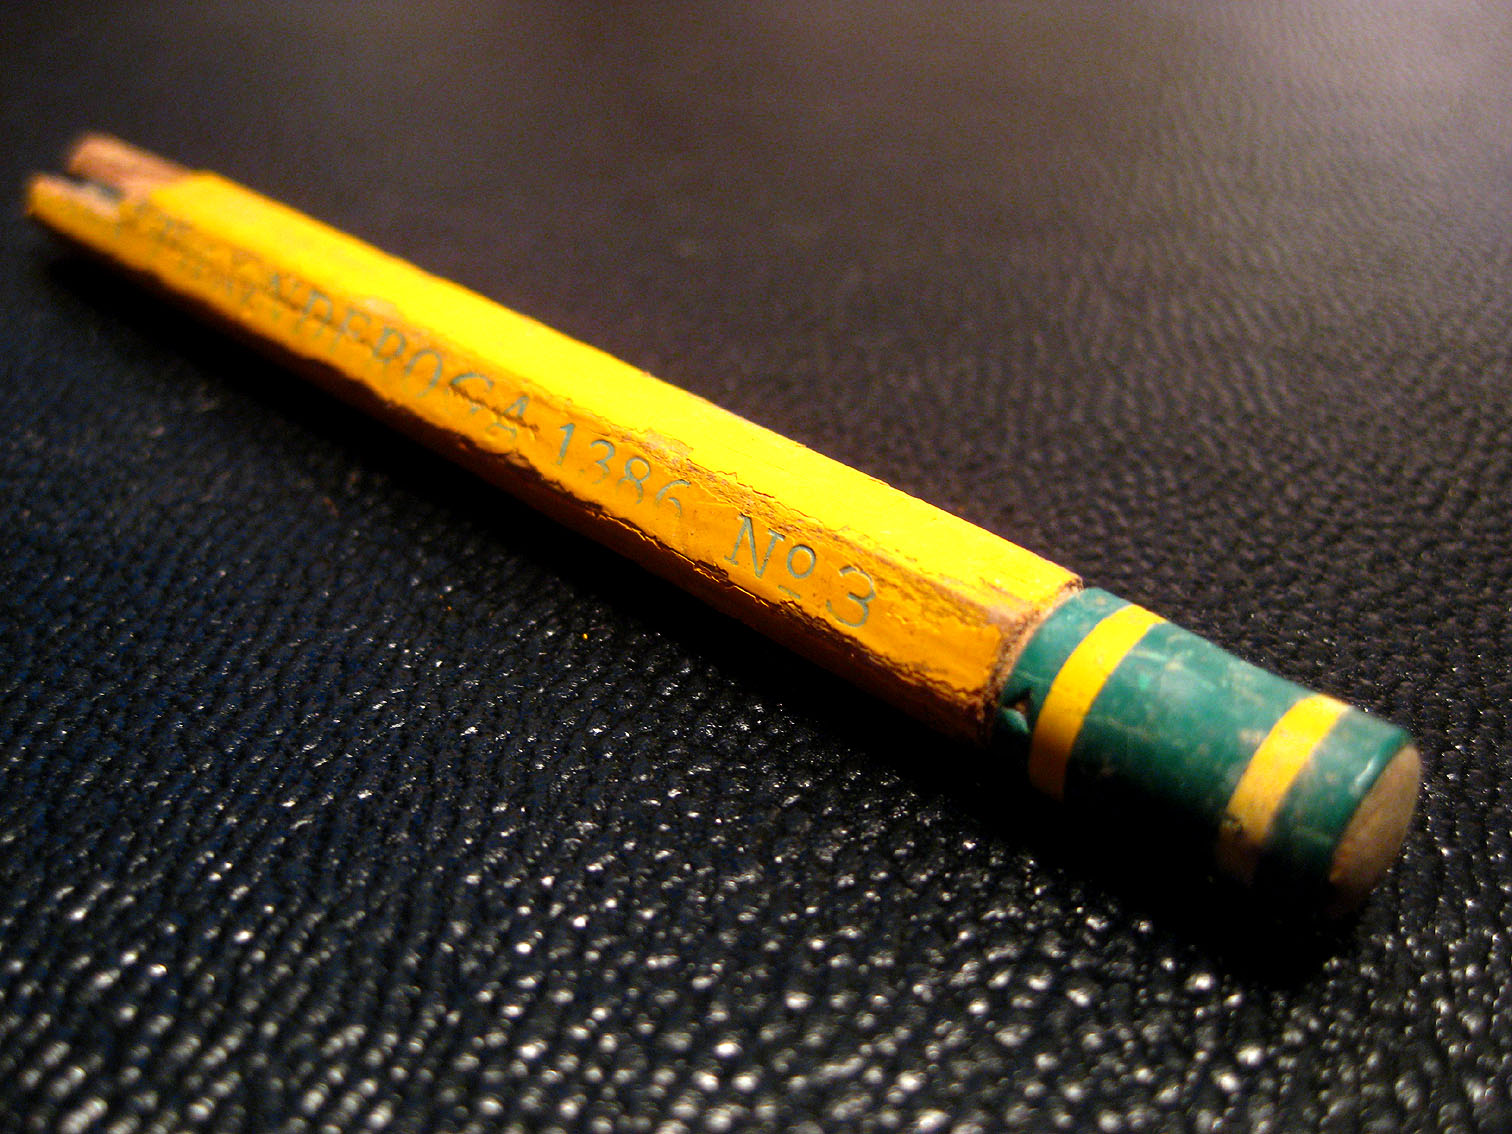 pencil2